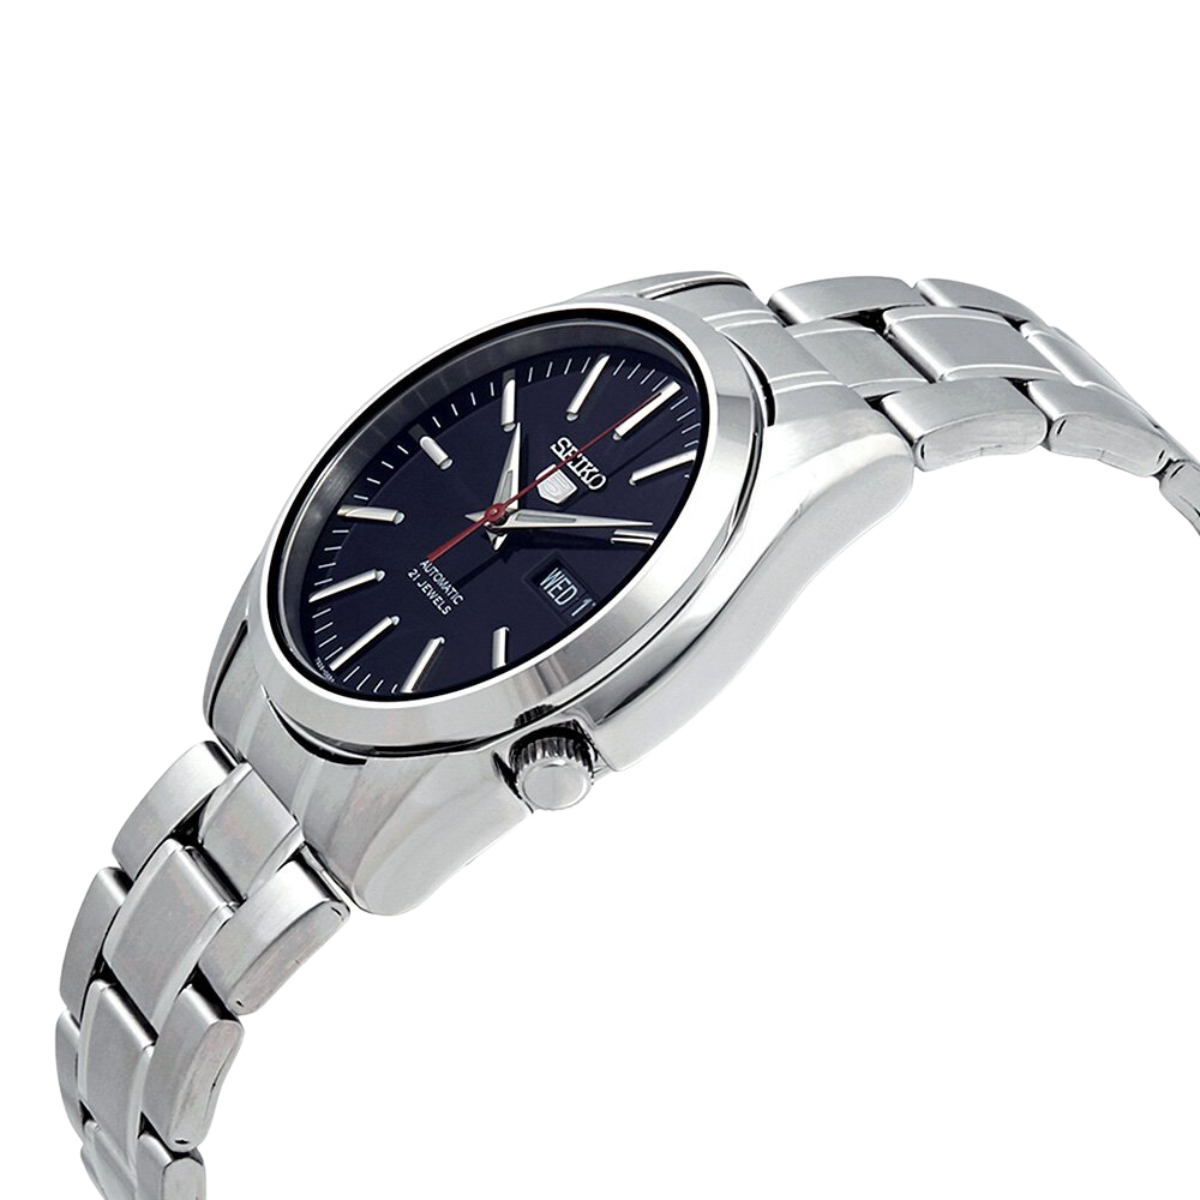 นาฬิกา SEIKO 5 Series 21 Jewels Men's Watch รุ่น SNKL45 SNKL45K SNKL45K1 Automatic